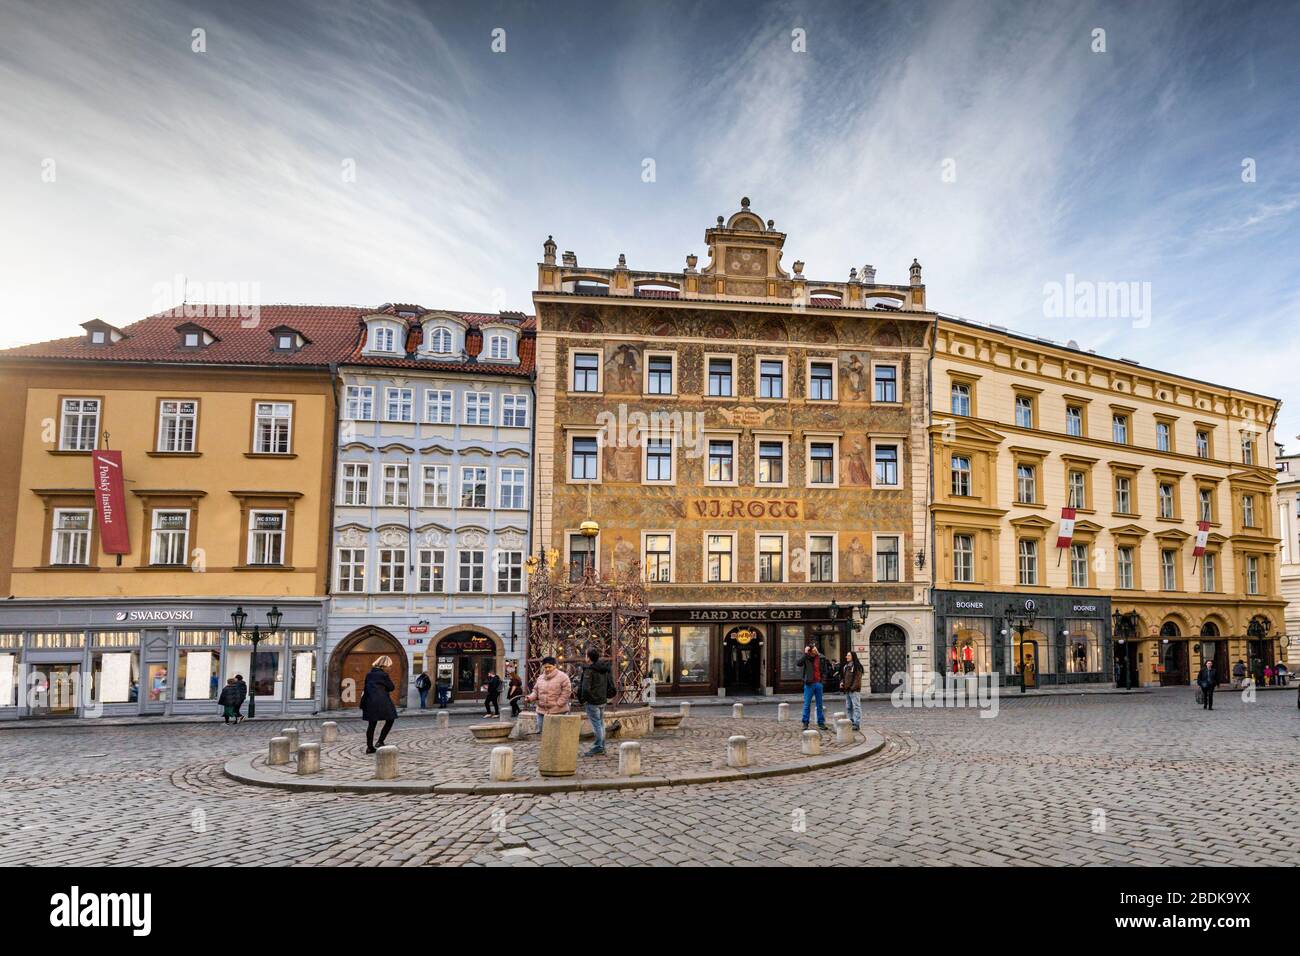 Männliche Namensvetter, der kleine Platz mit dem Renaissance-Brunnen, Altstadt in Prag. Das Rott House beherbergt jetzt das Hard Rock Cafe Stockfoto